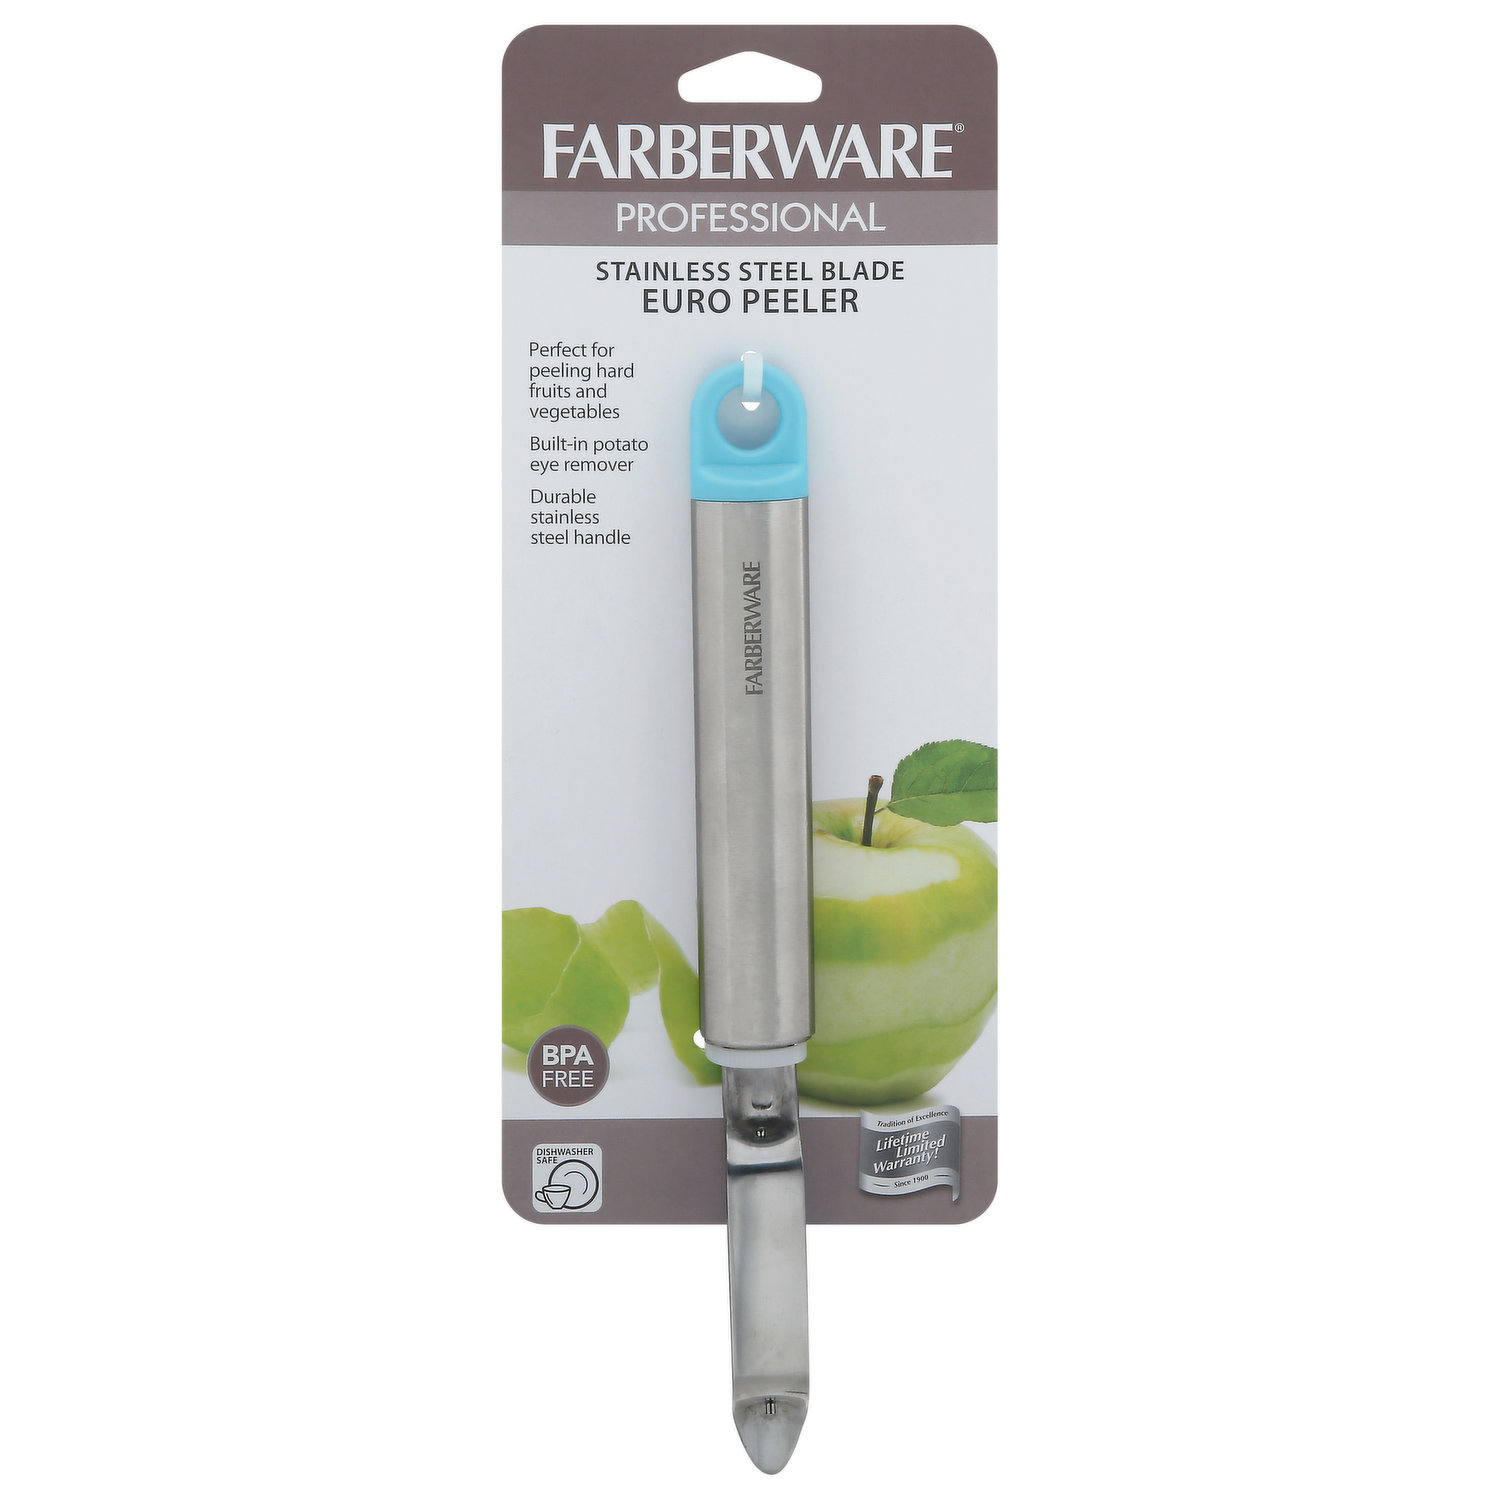 Farberware Pro Set of 2 Stainless Steel Vegetable Peelers